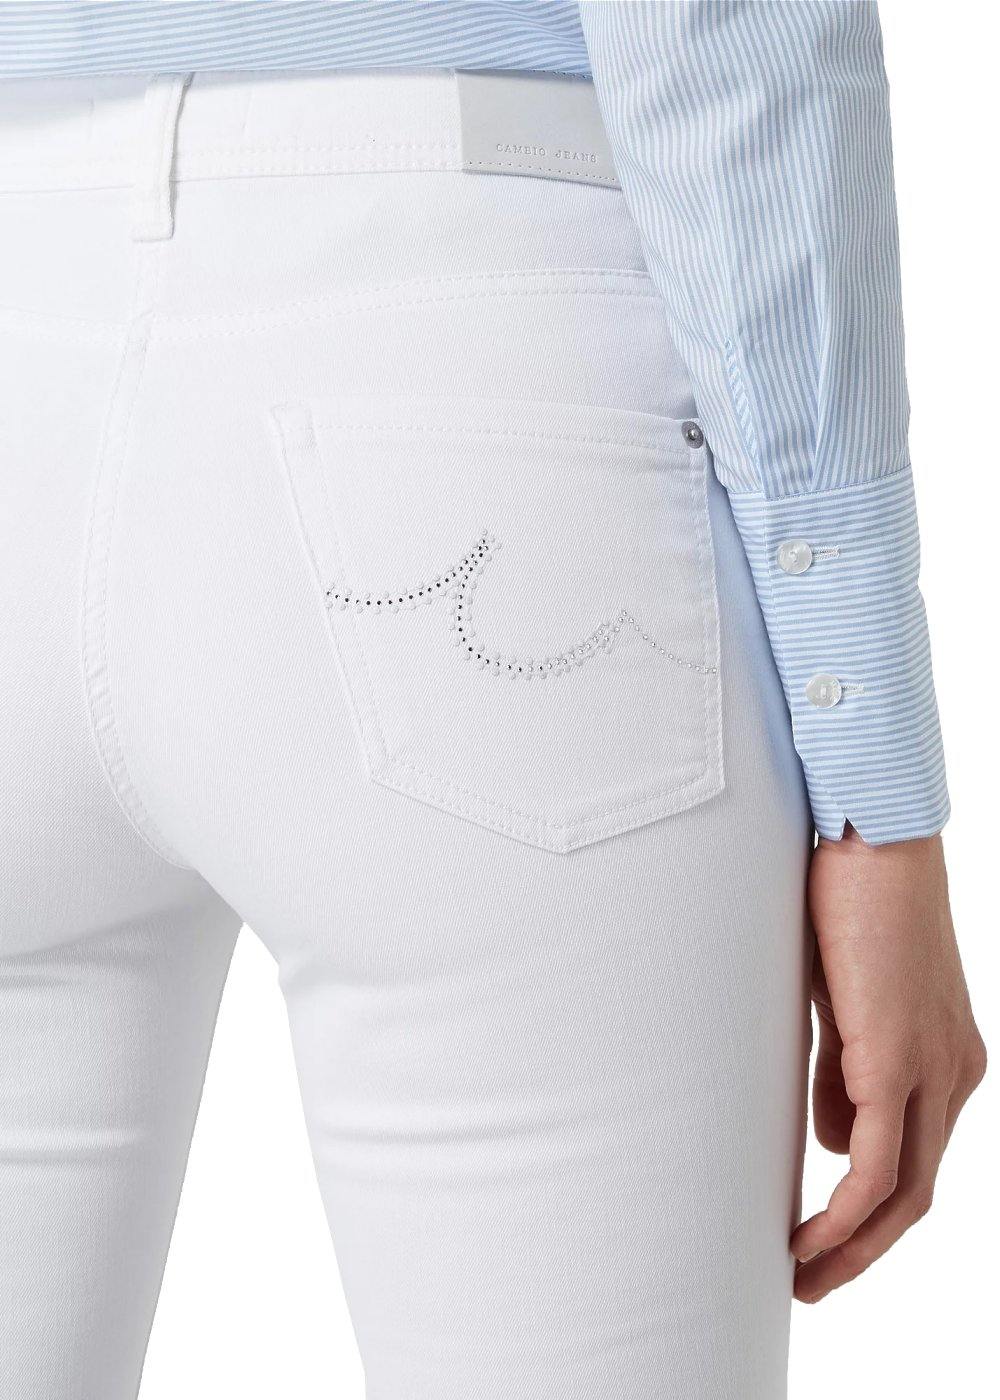 Cambio Jeans Parla in weiß online kaufen. Slim fit Jeans mit perfekter Passform von Cambio. Weiße Damen Jeans in weicher Denim Stretchware mit normaler Hosenbeinlänge aus der neuen Cambio Kollektion.